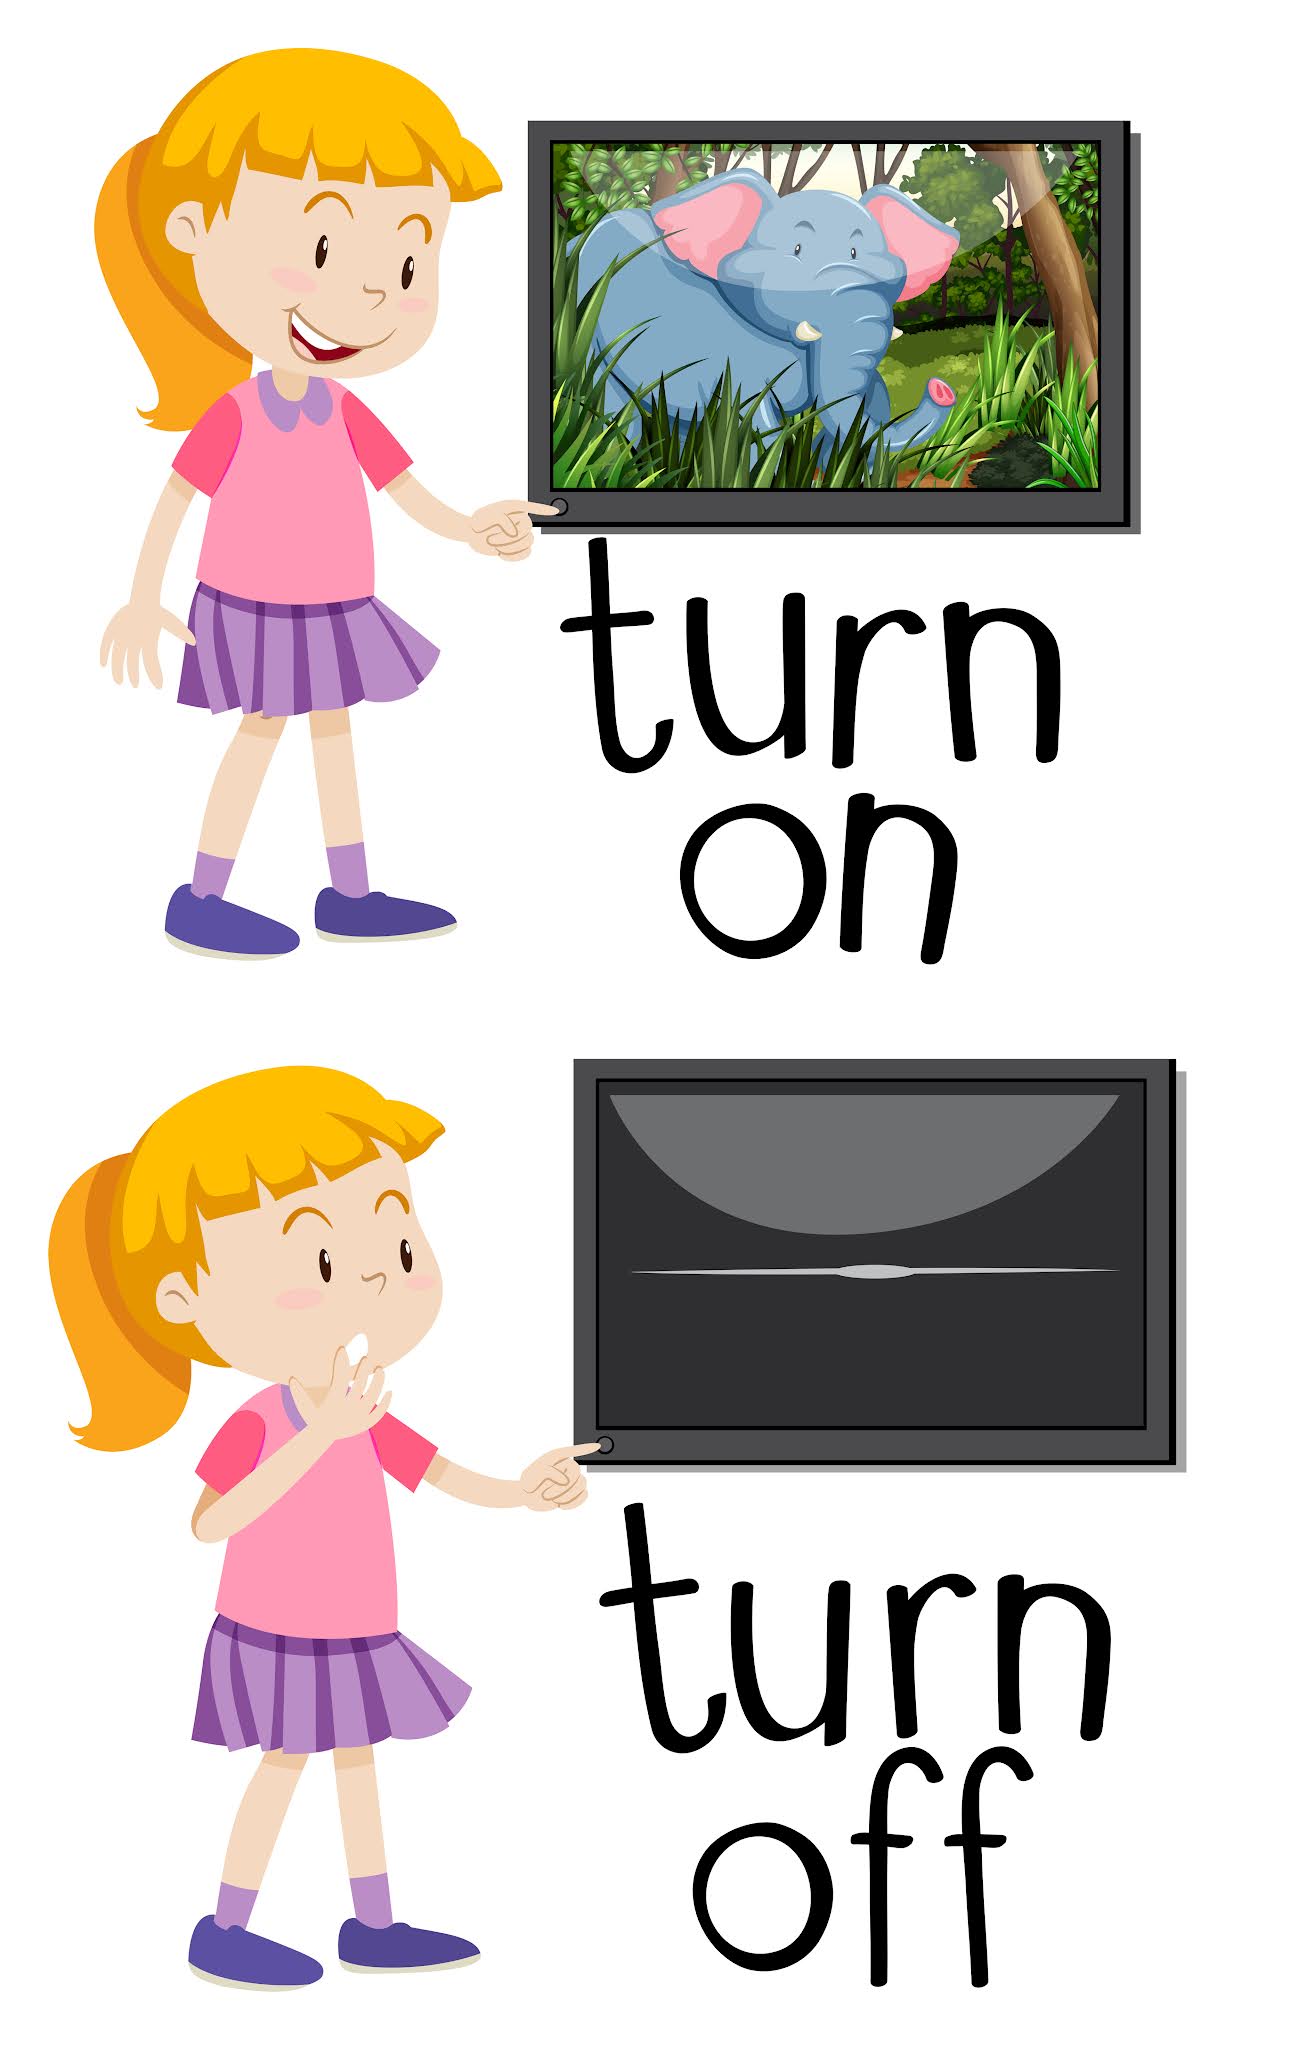 Turn on off. Turn on turn off. Turn off картинка. Turn картинка для детей. Turn on put on